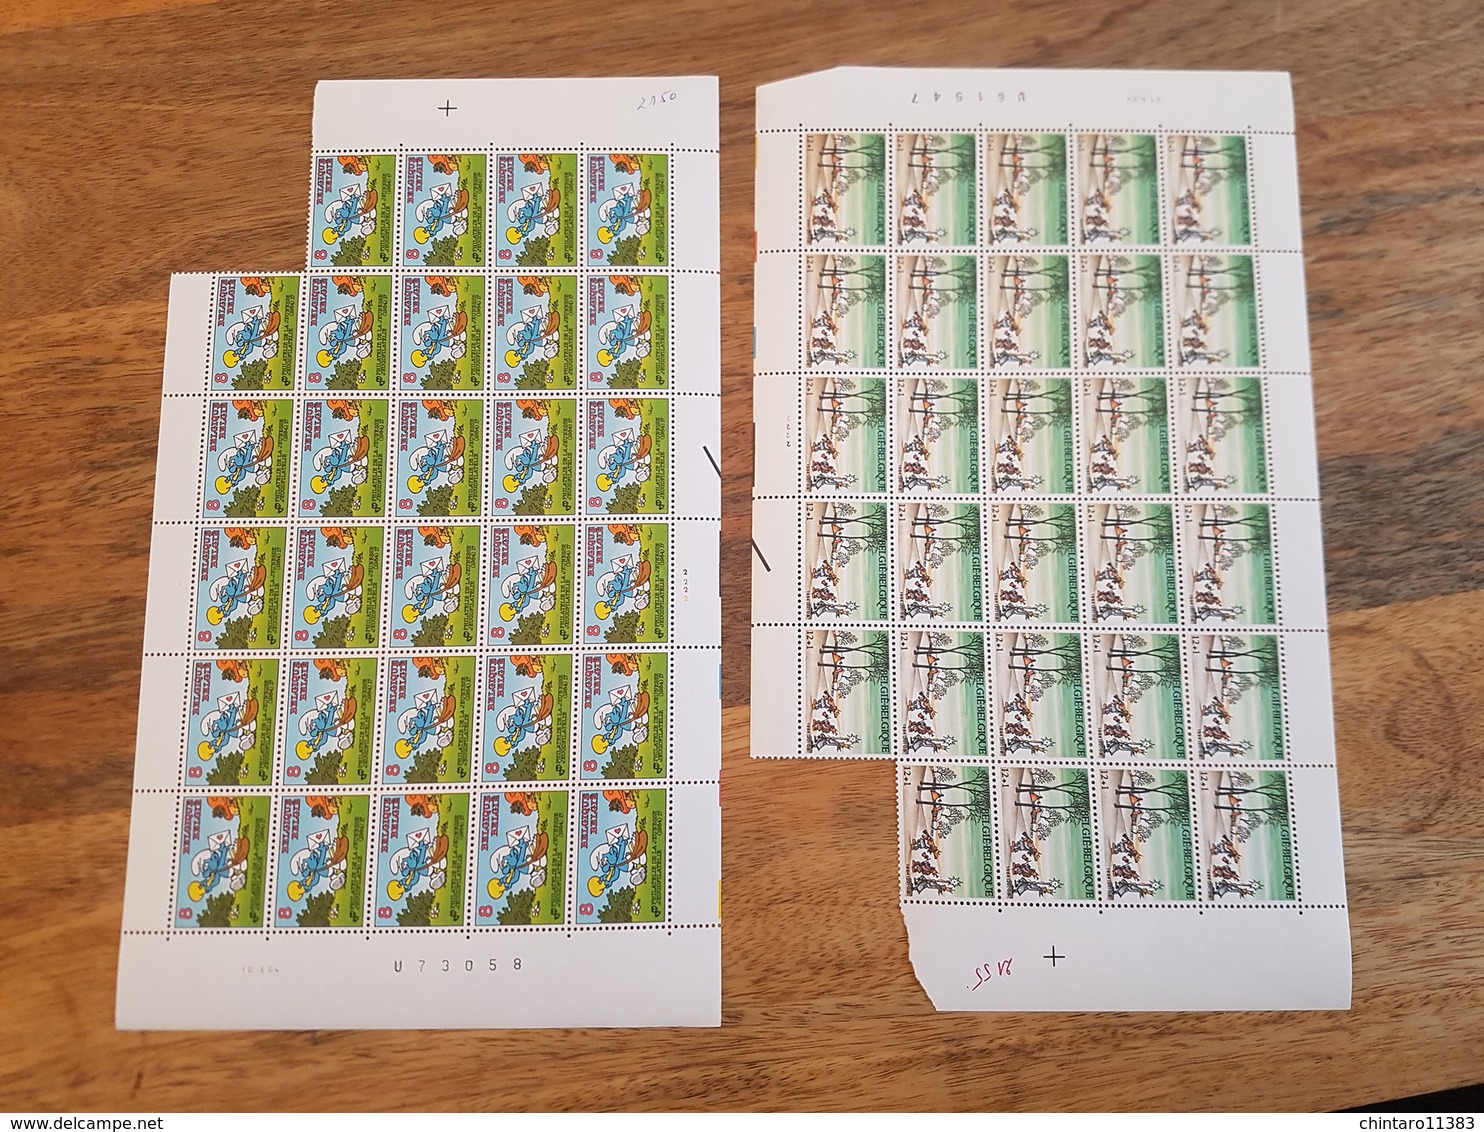 Lot feuilles incomplètes (manque 1) de timbres Belgique - Année 1984